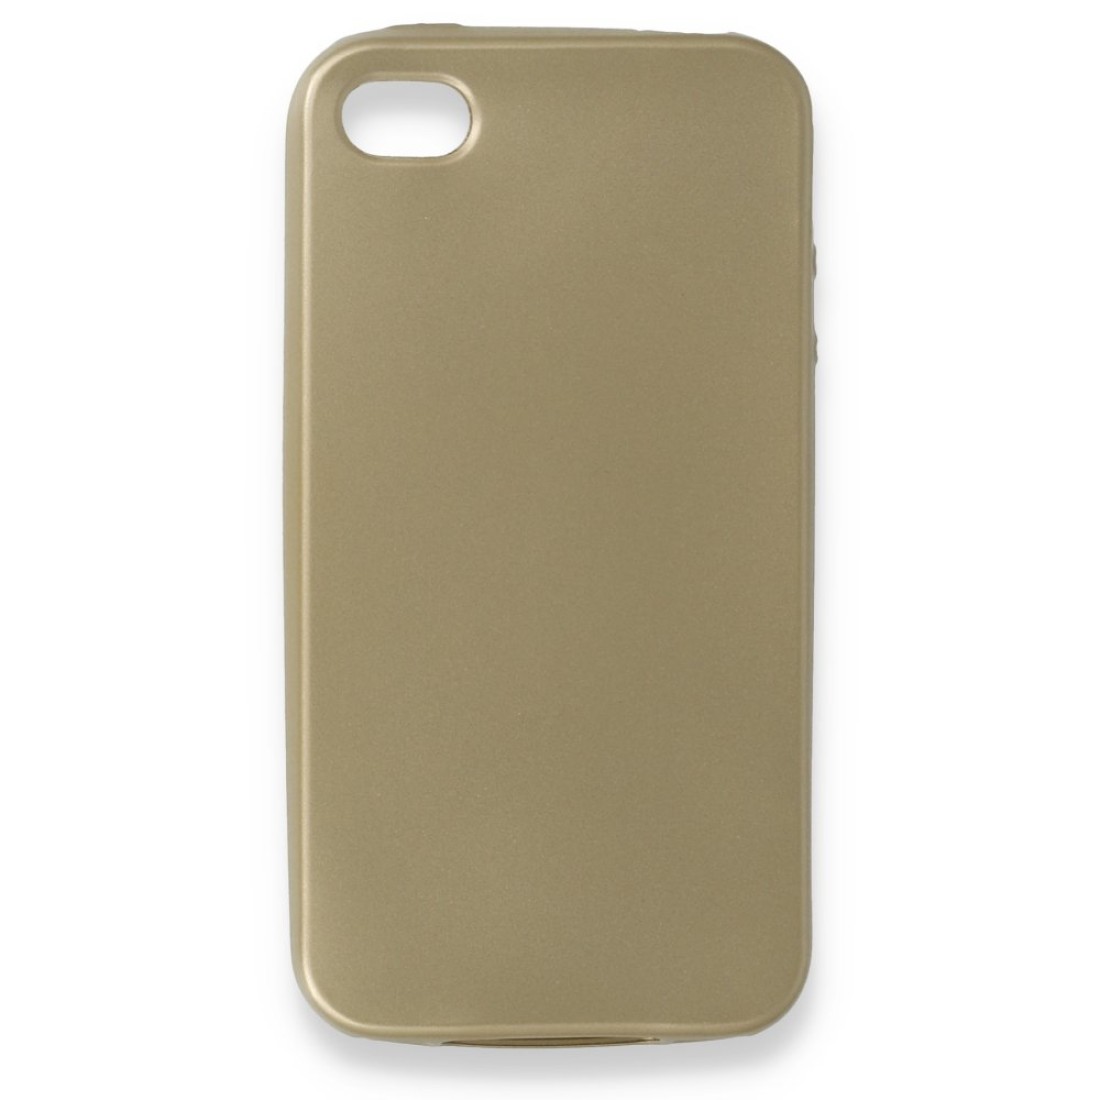 Apple iPhone 4 Kılıf Premium Rubber Silikon - Gold